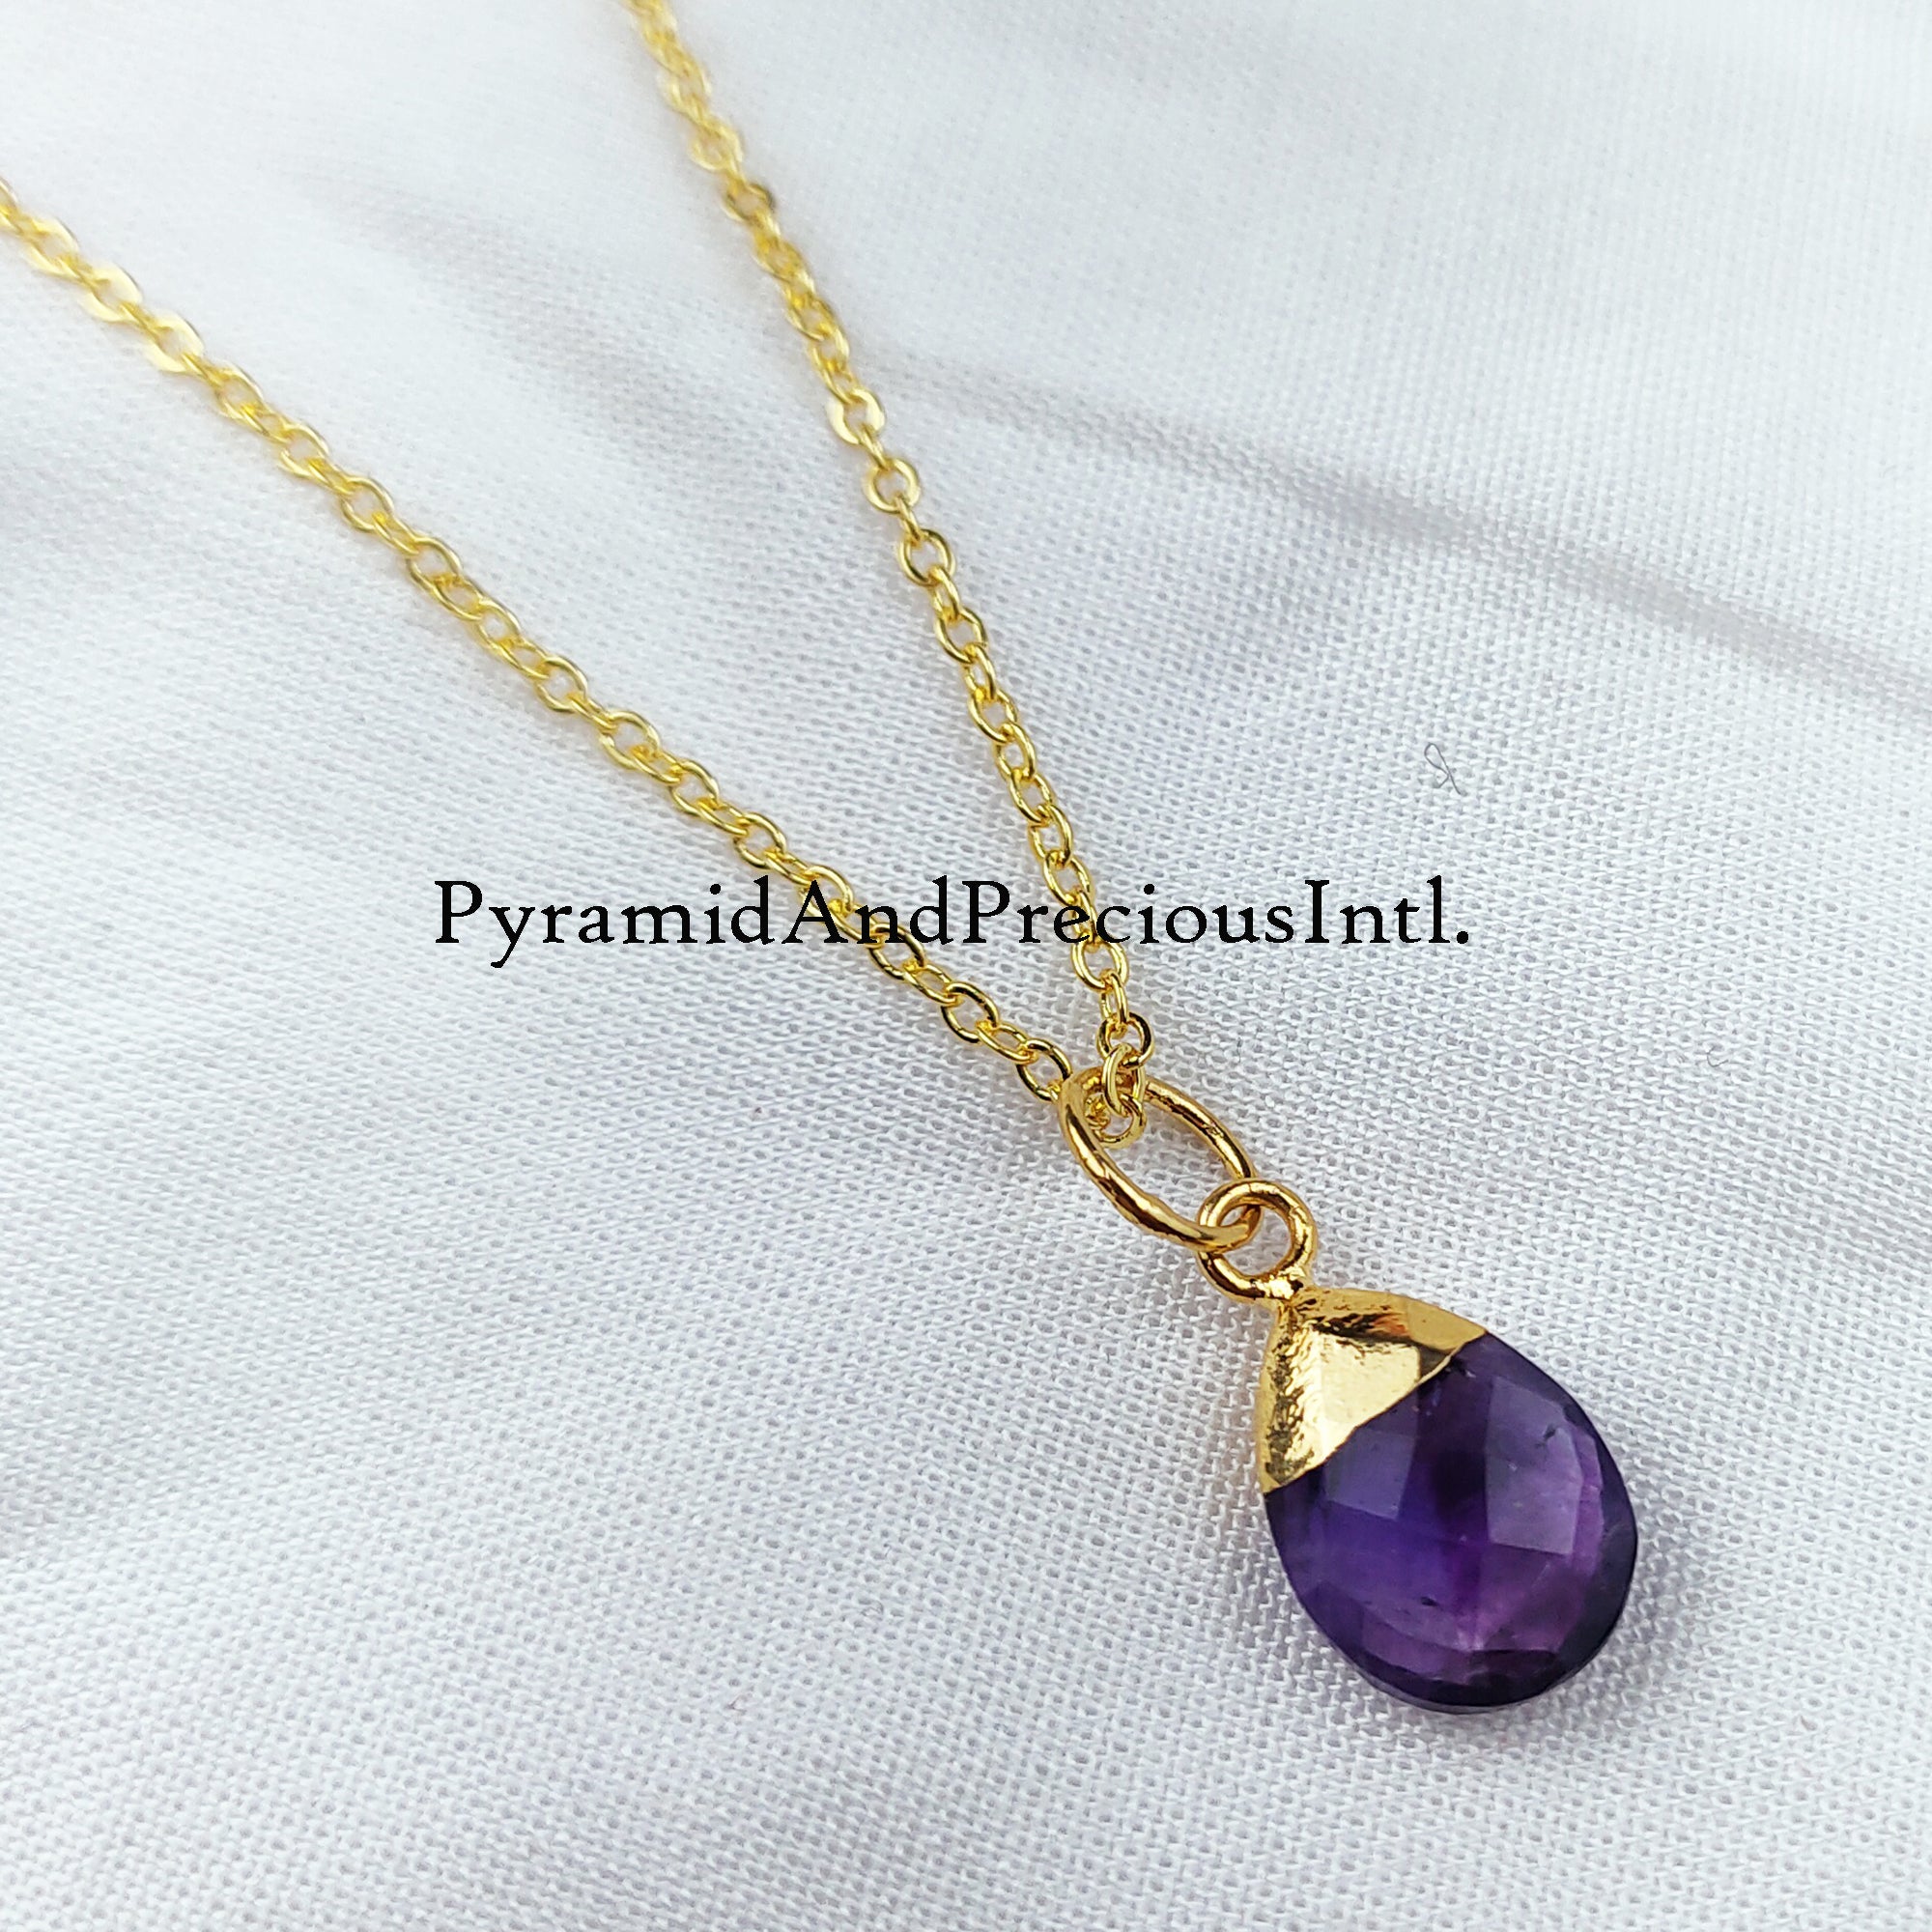 Purple Amethyst Necklace, Amethyst Teardrop Necklace, Chain Necklace, Pendant Necklace